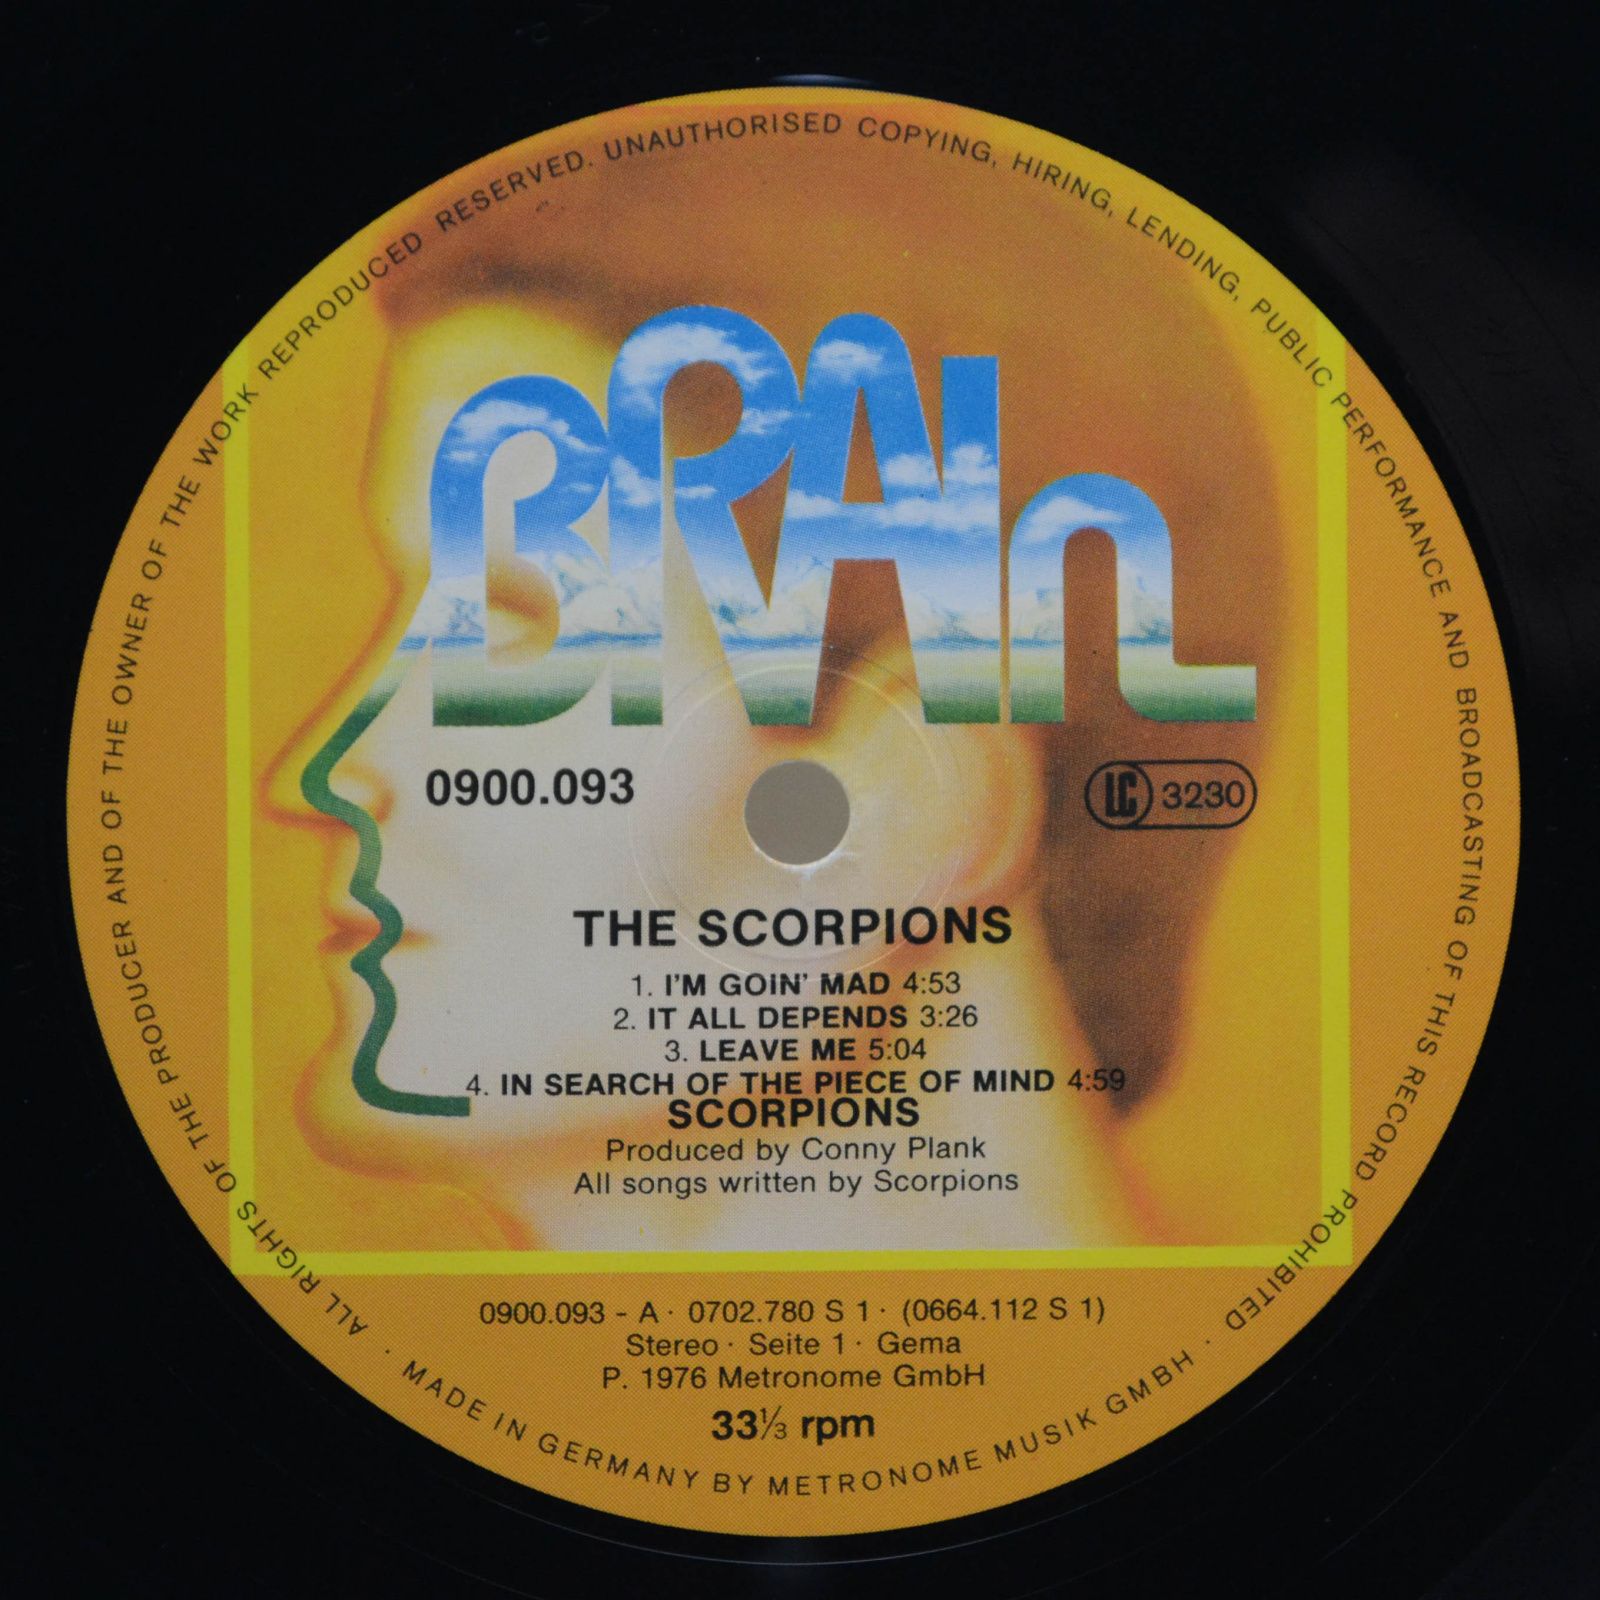 Scorpions — The Scorpions, 1972